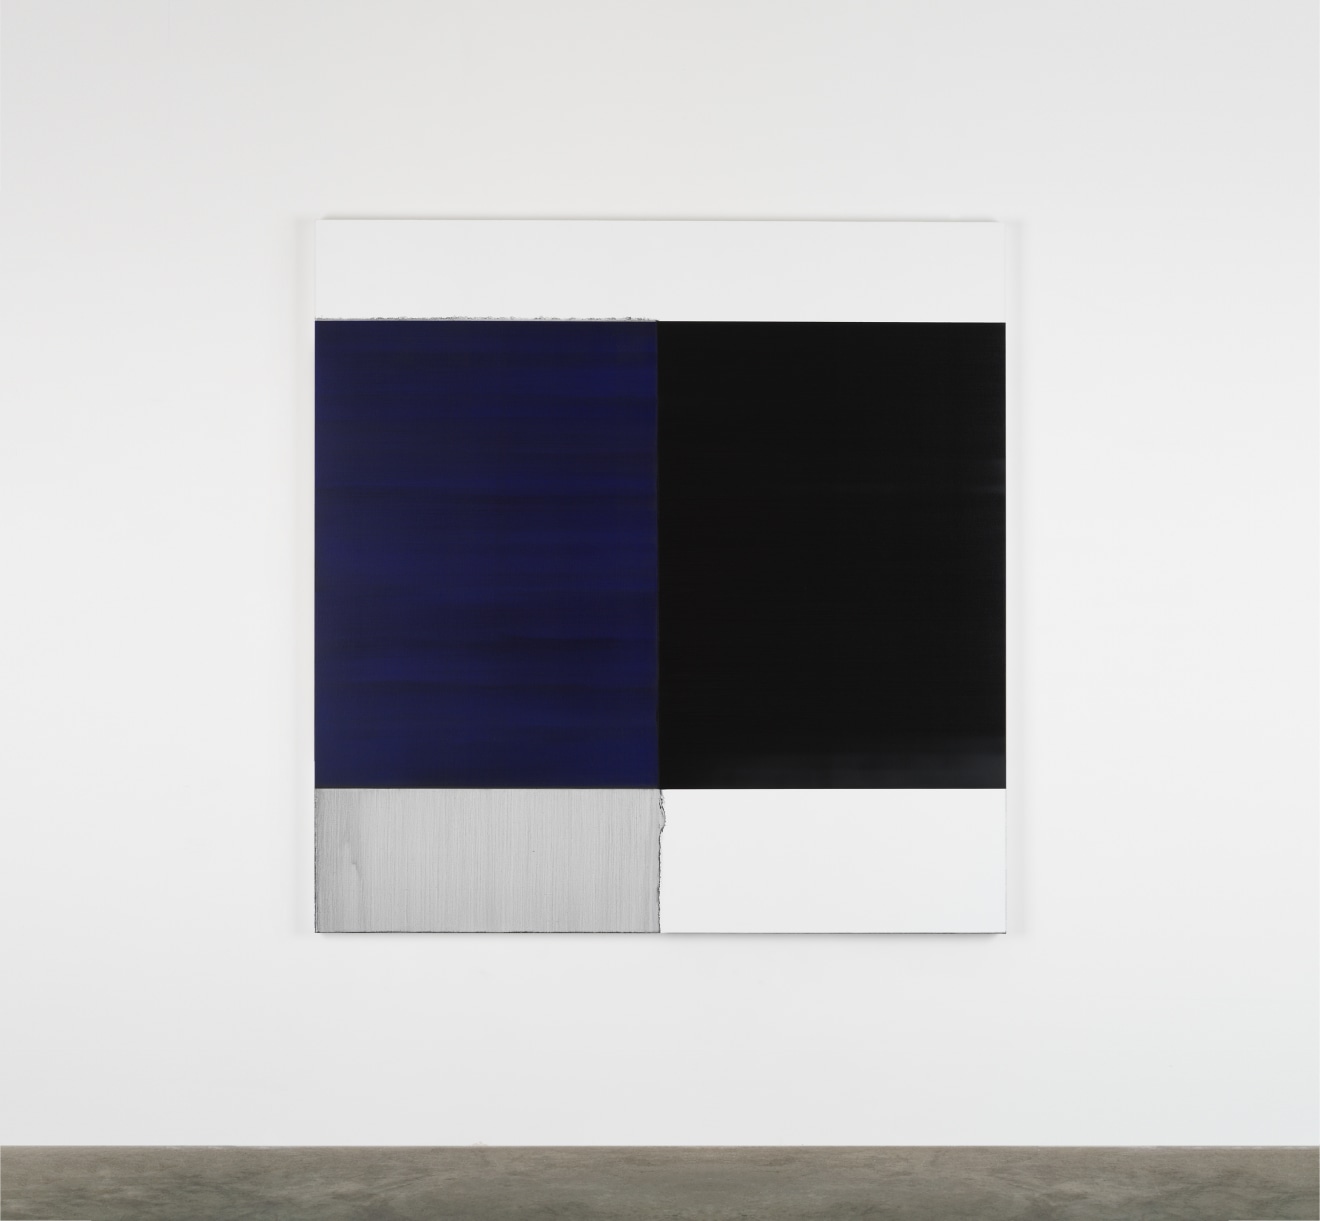 Callum Innes Exposed Painting Blue Violet, 2018